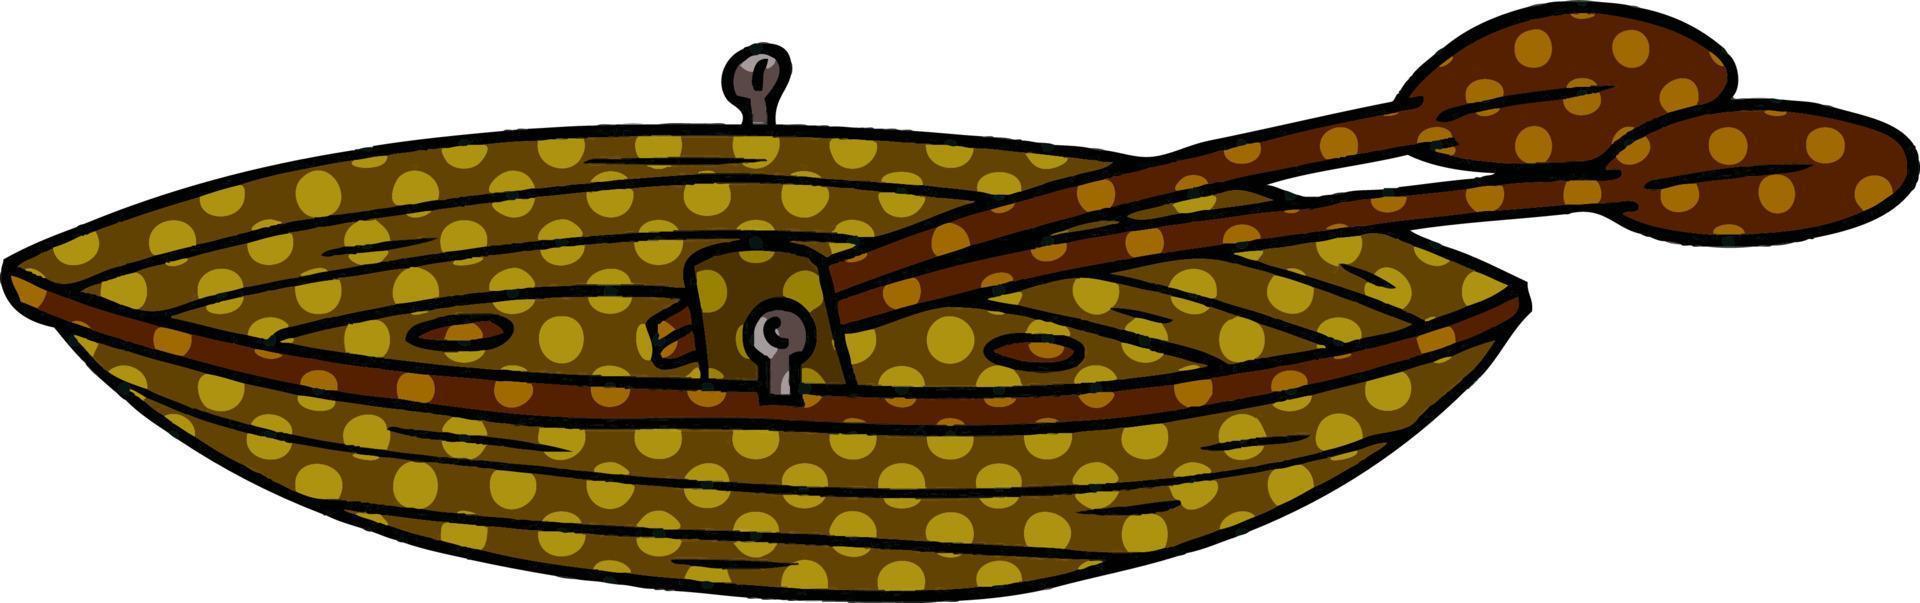 dessin animé doodle d'un bateau en bois vecteur